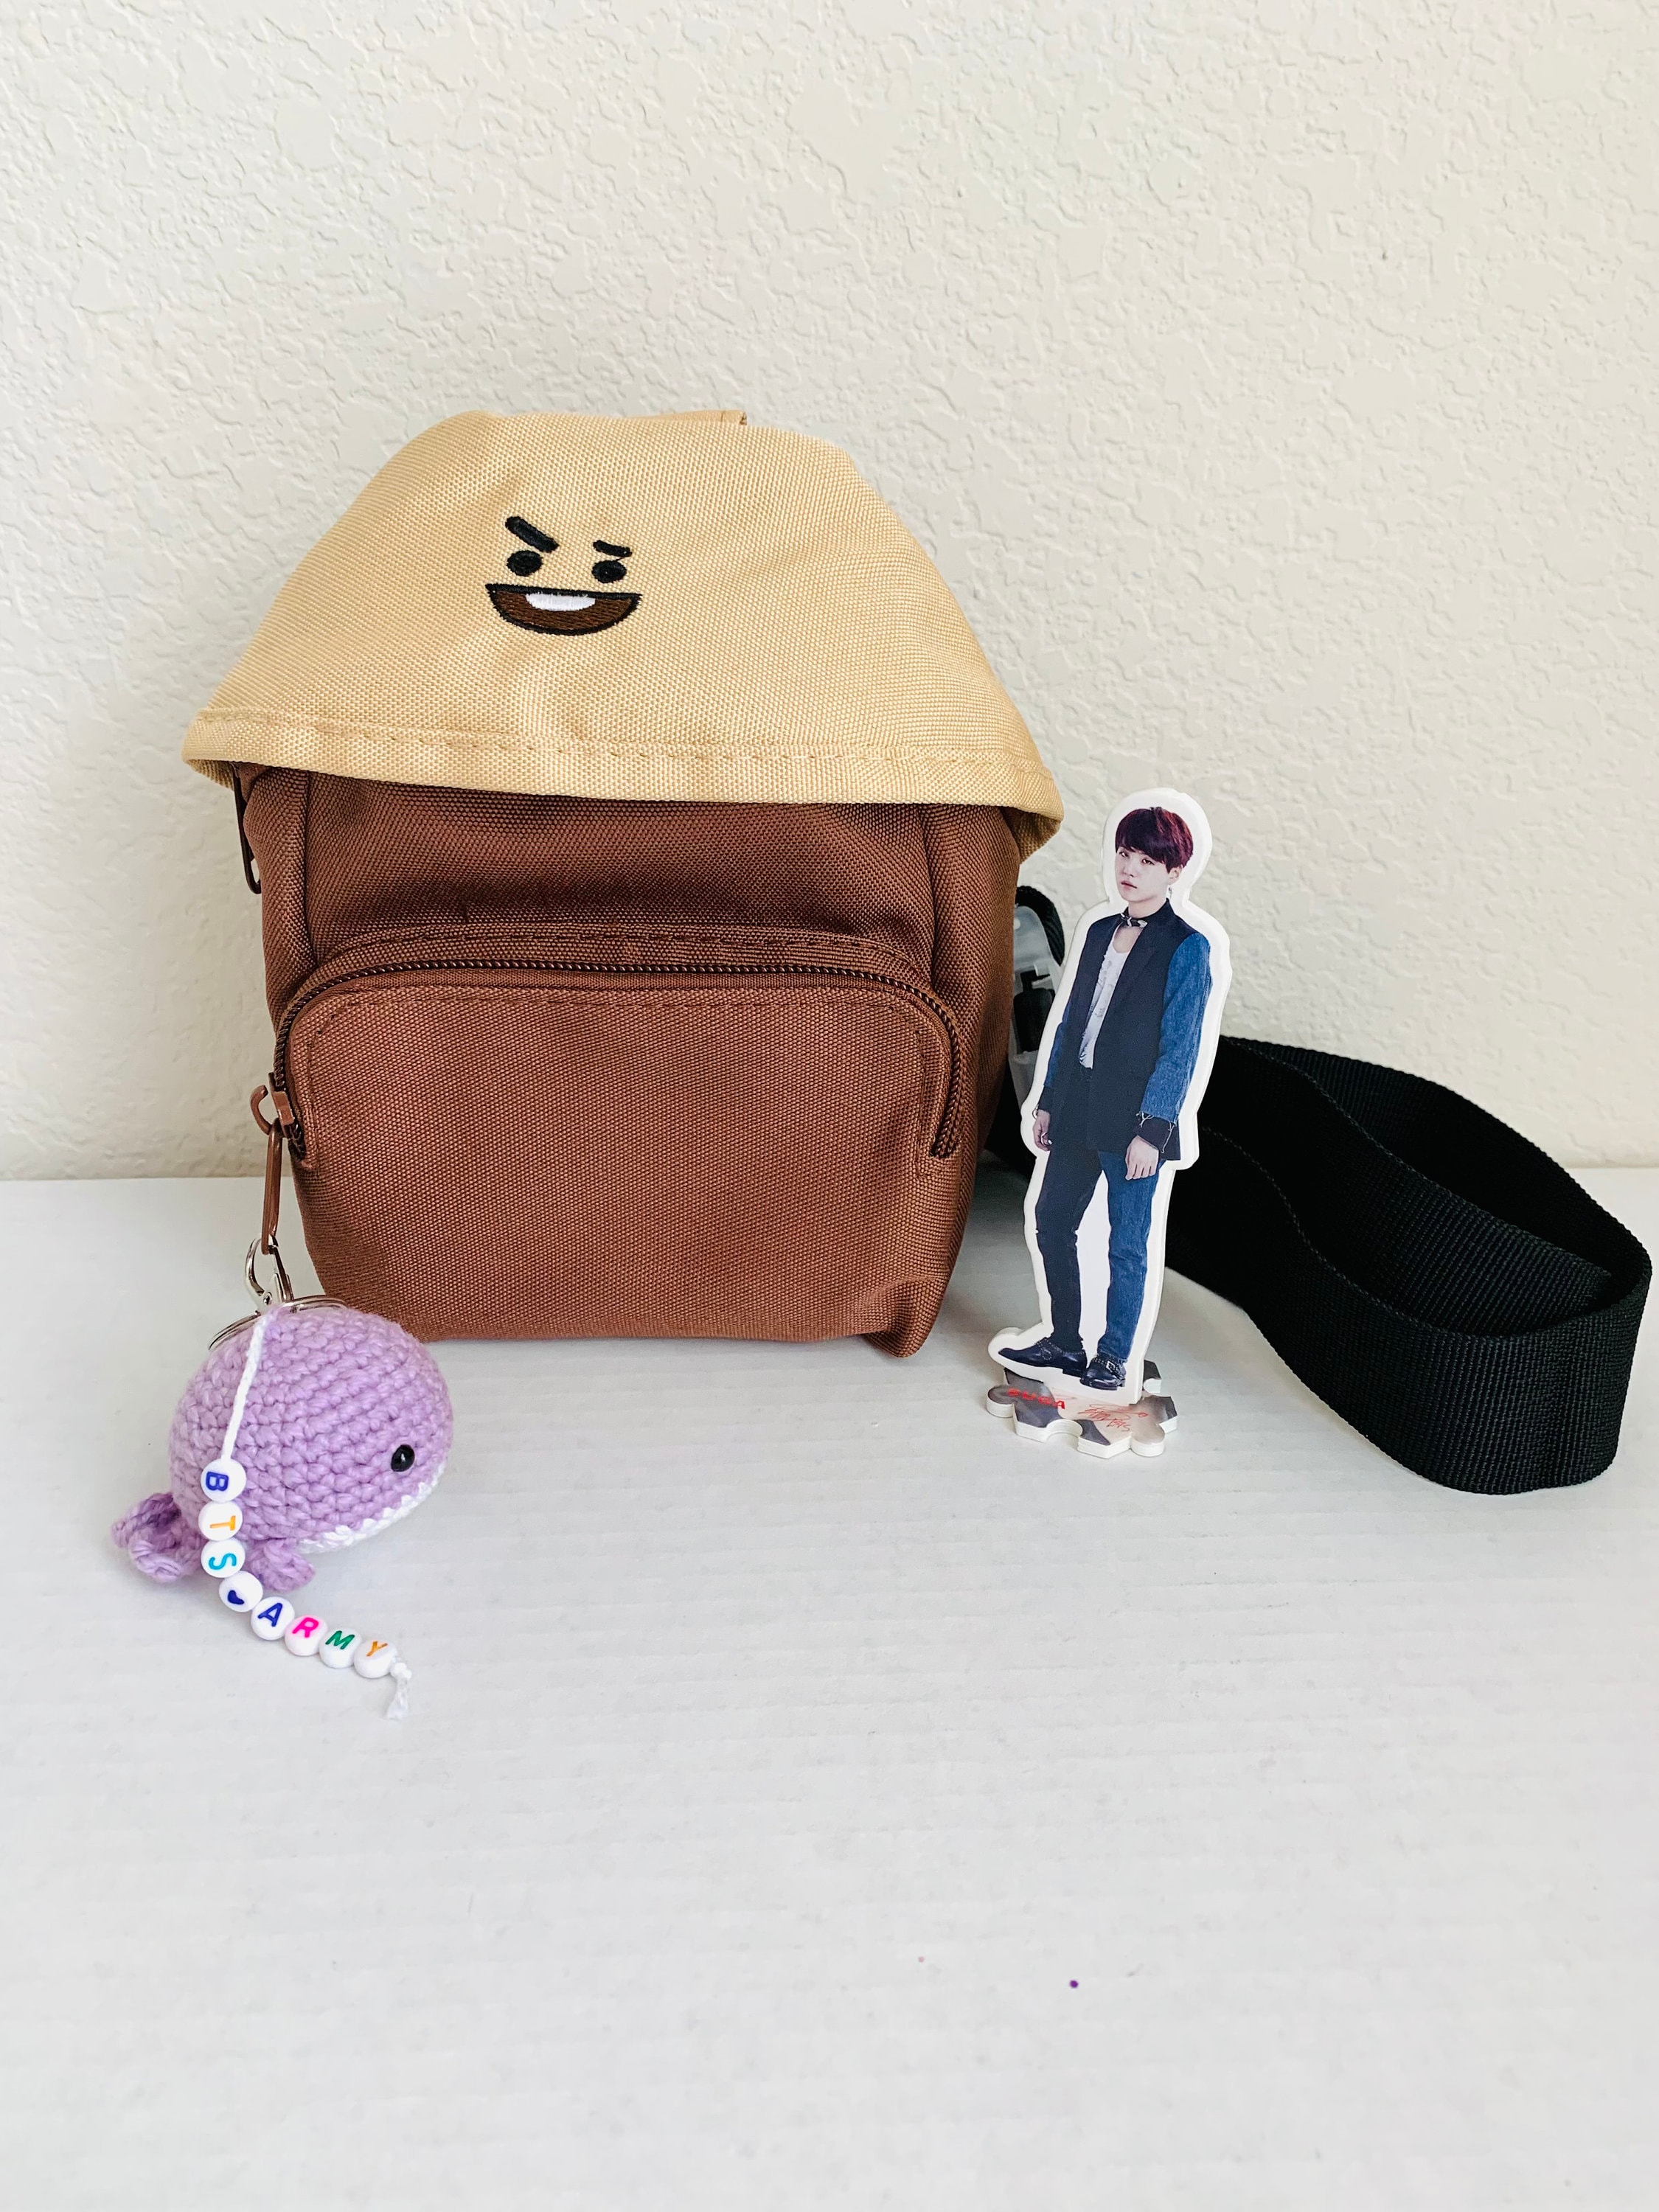 Kpop BTS BT21 X Mini Messenger Bag Fan Gift 